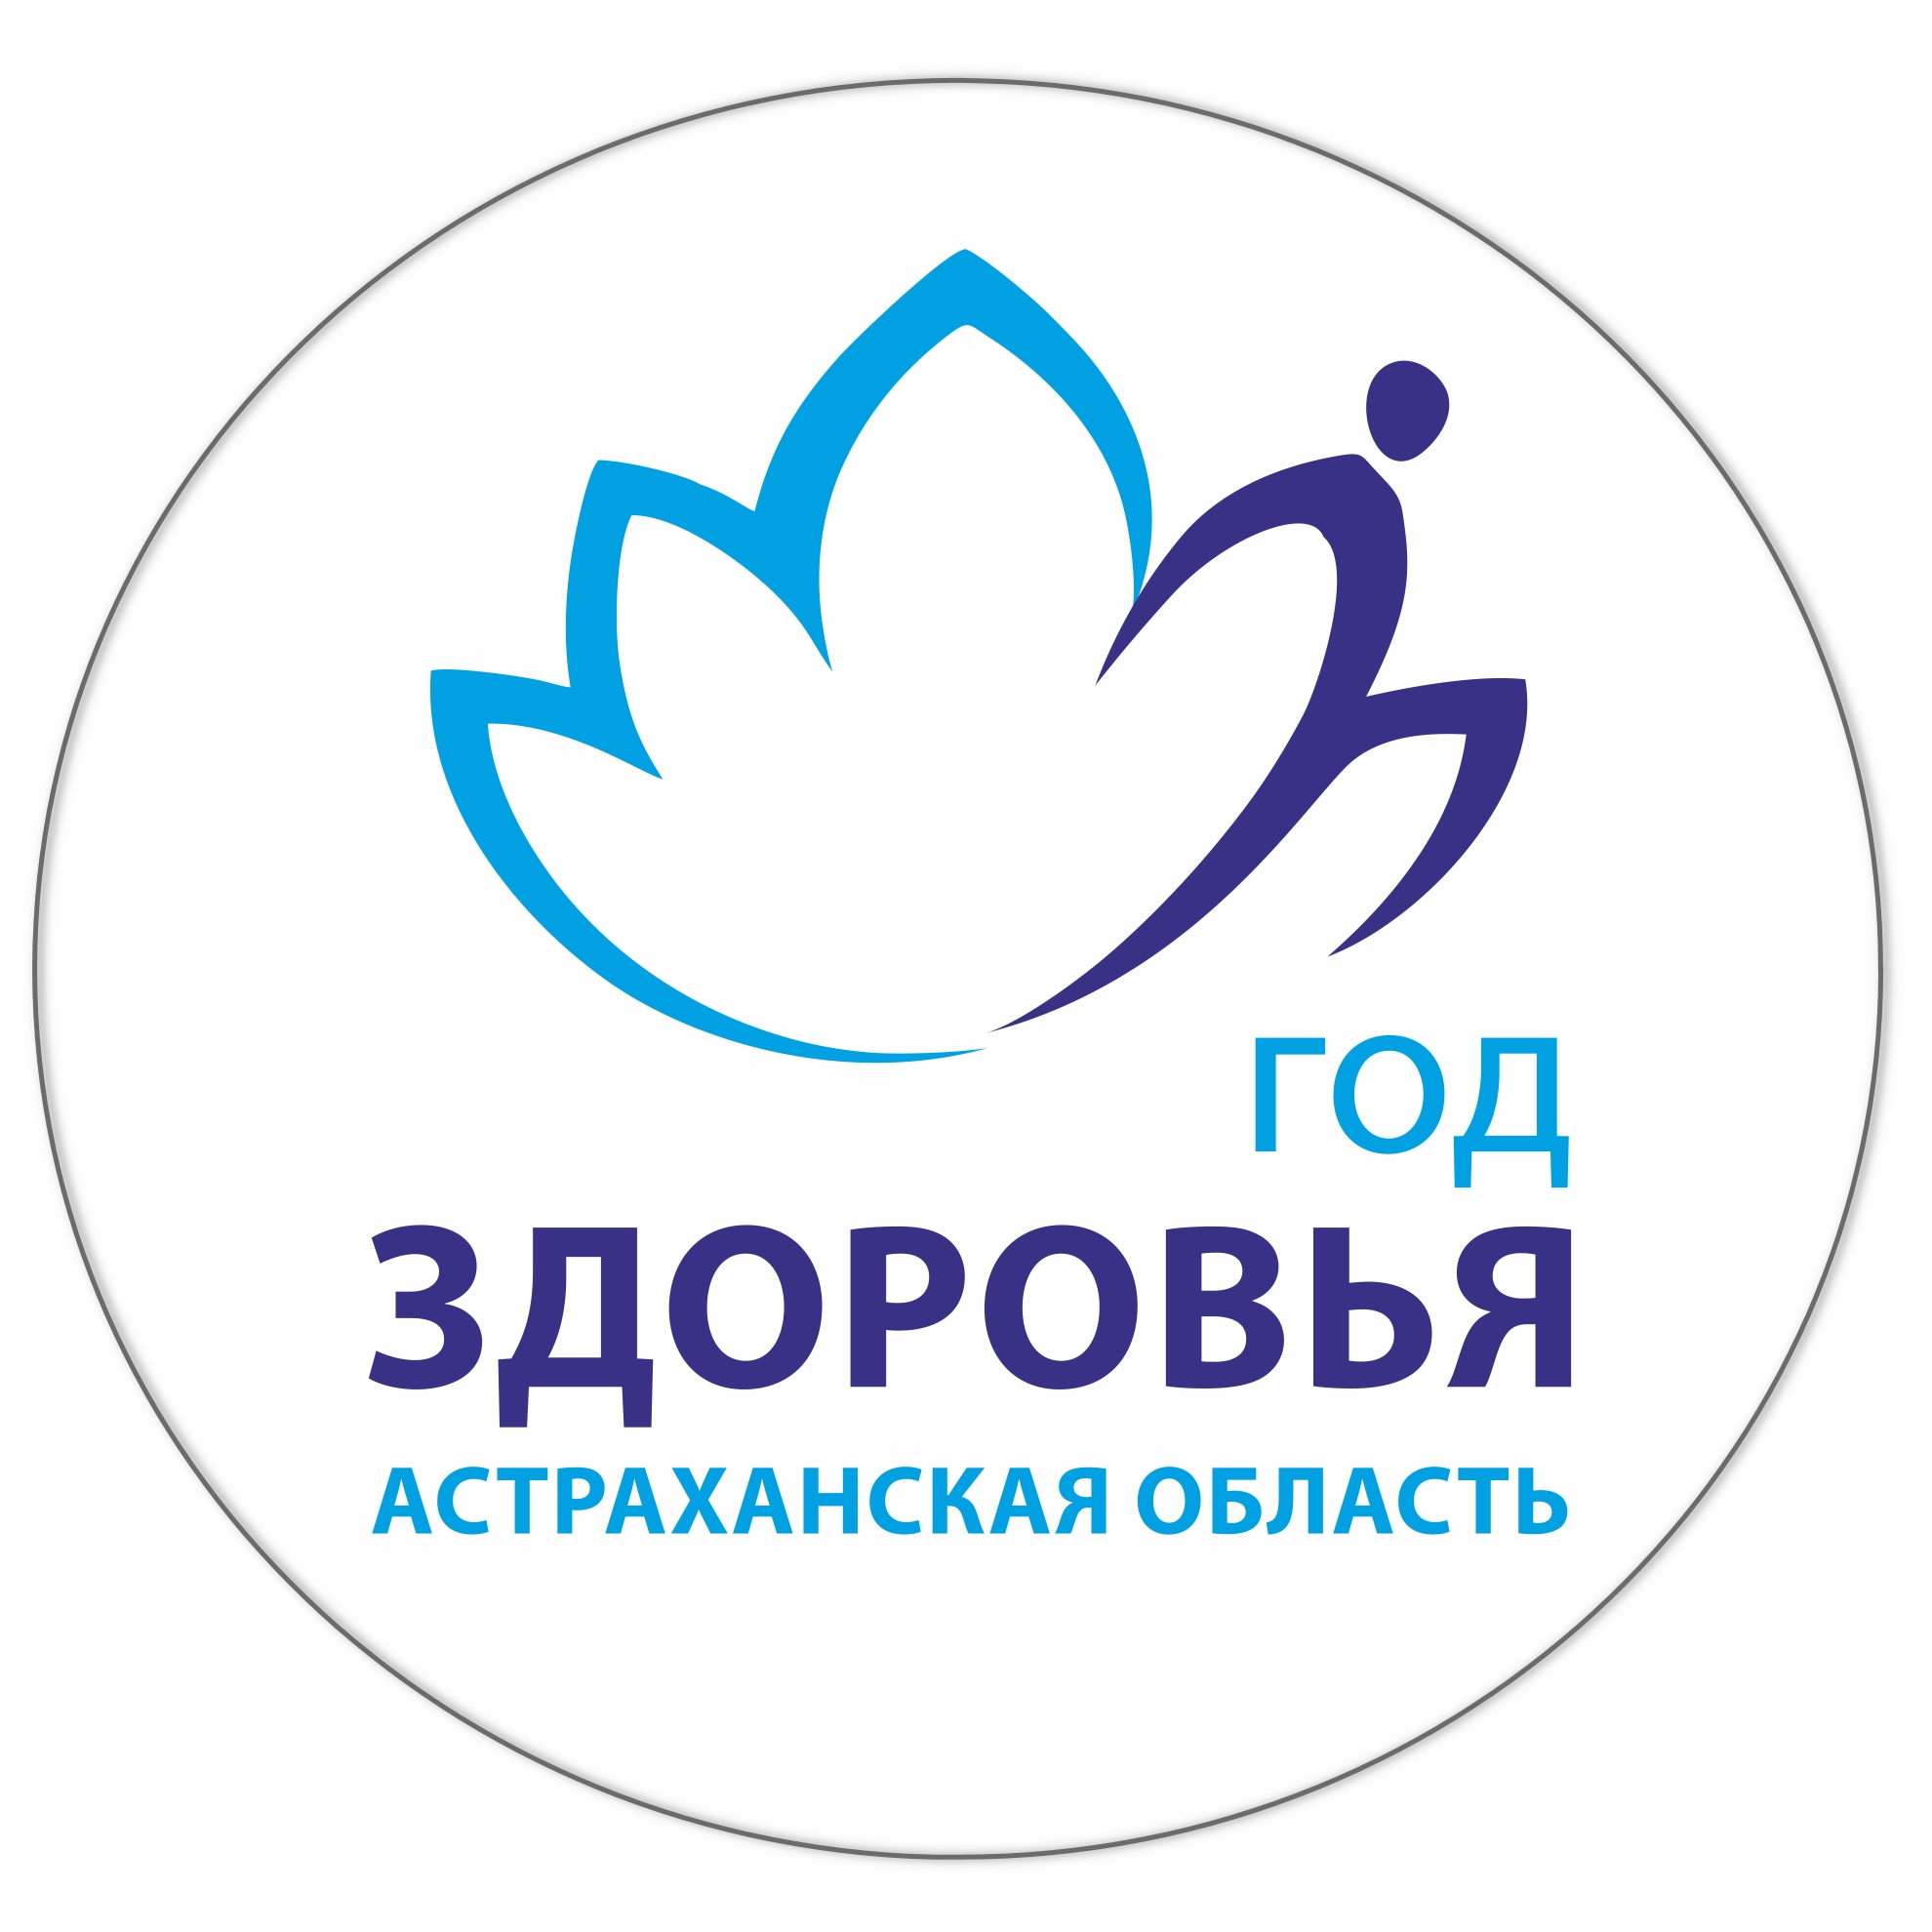 Государственное бюджетное учреждение здравоохранения Астраханской области «Городская клиническая больница №2 имени братьев Губиных»